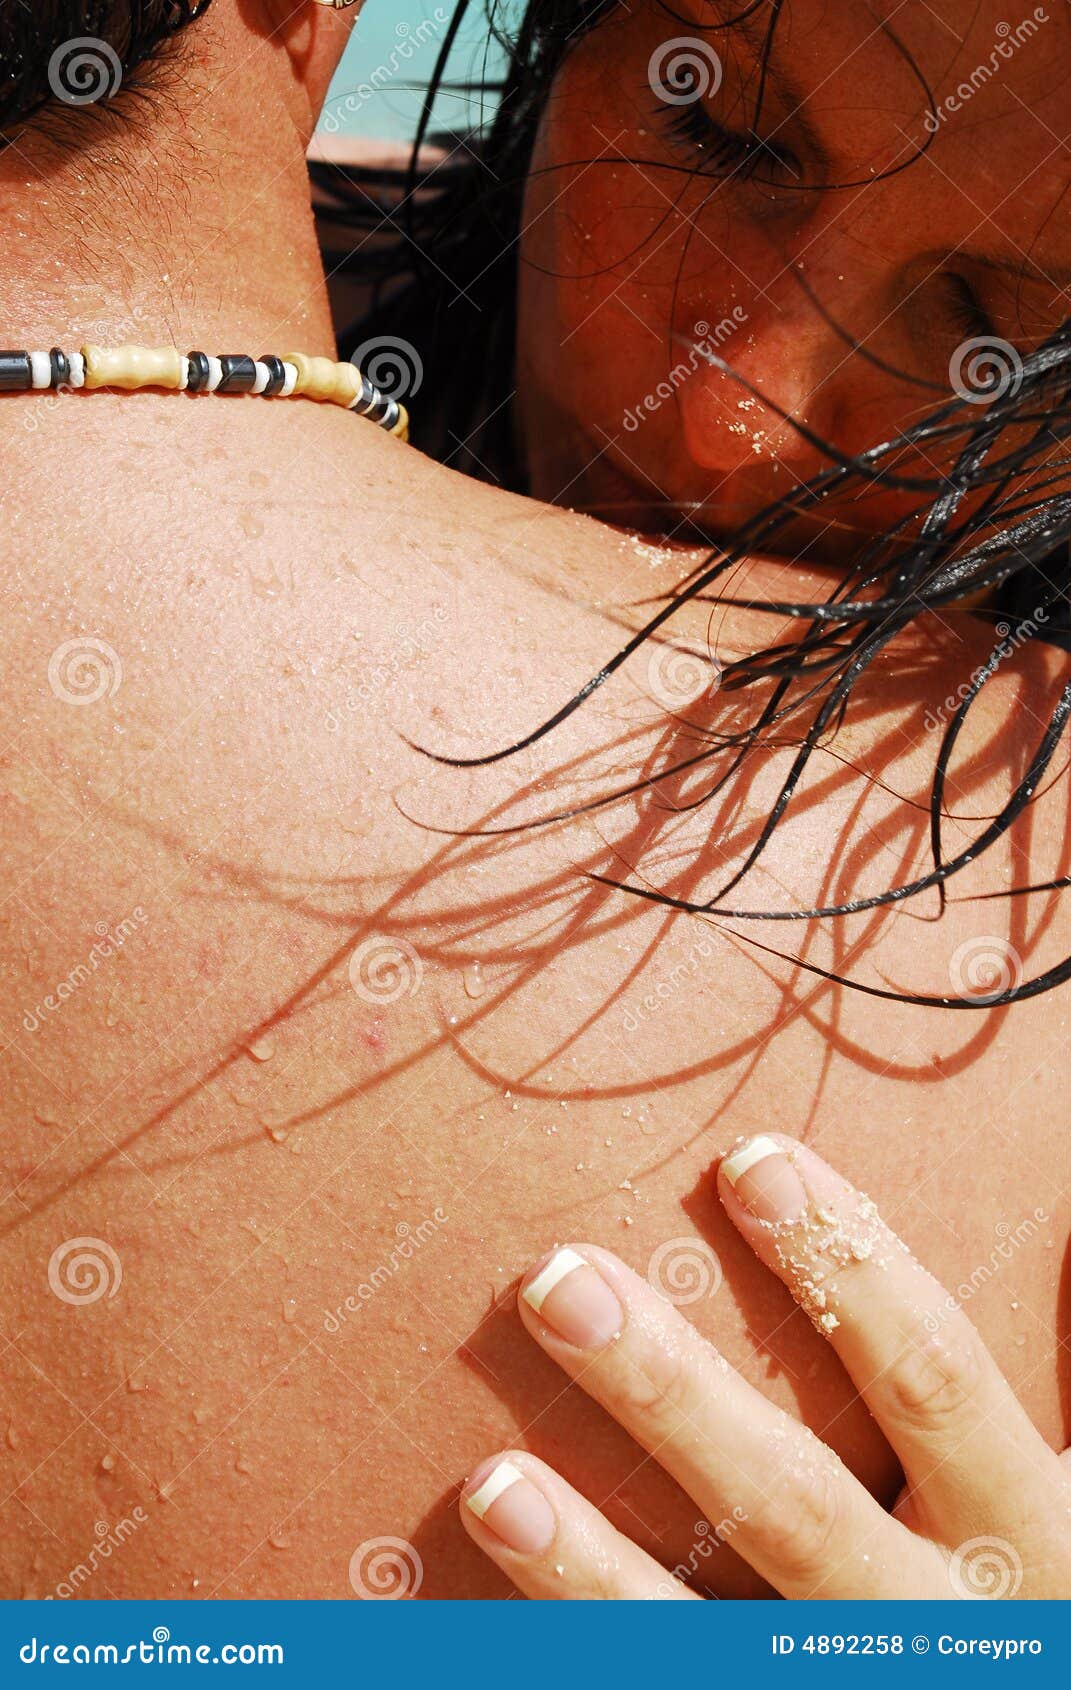 Rzymianie mokry pocałunek włosów. Z tyłu jego włosy plaży przepływy całowanie stary romantycznie naramiennej kobiety